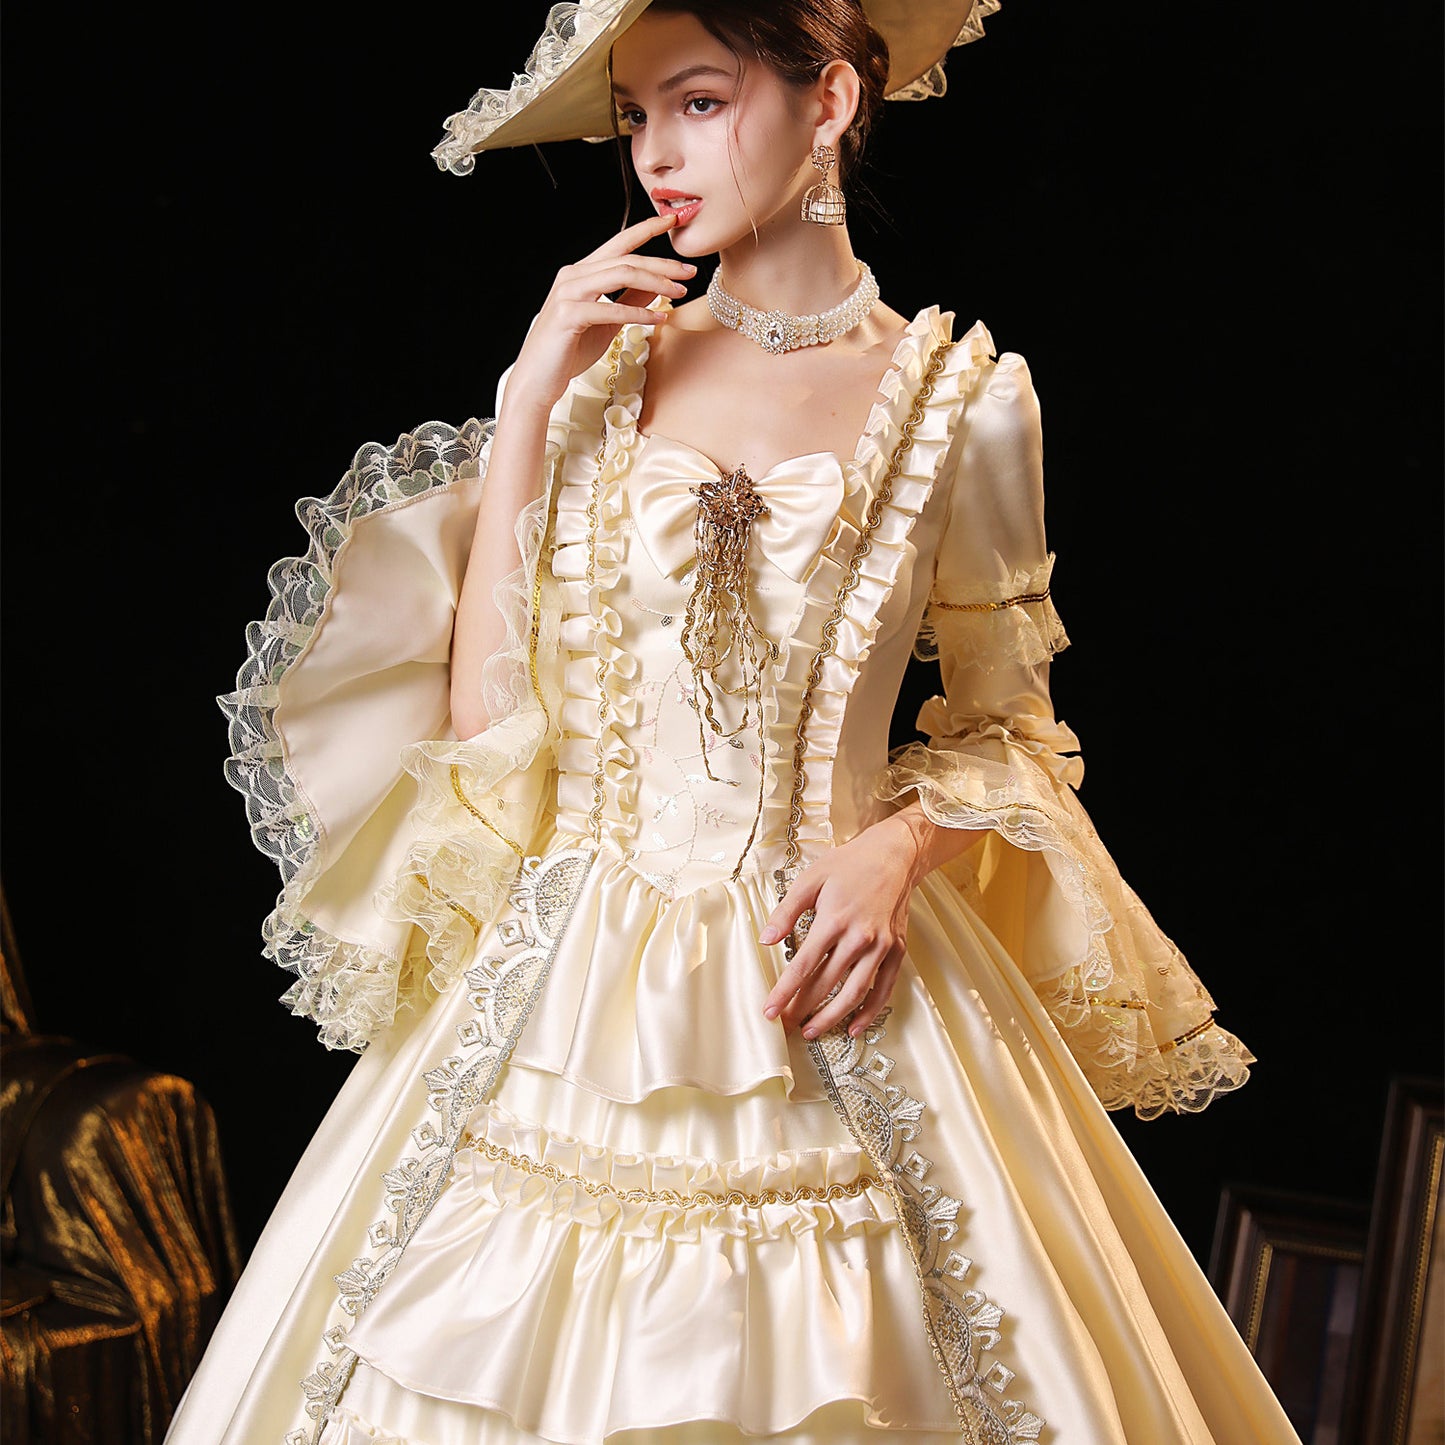 Women's Rococo Square Neckline Marie Antoinette Costume Masquerade Ball Gown Dress